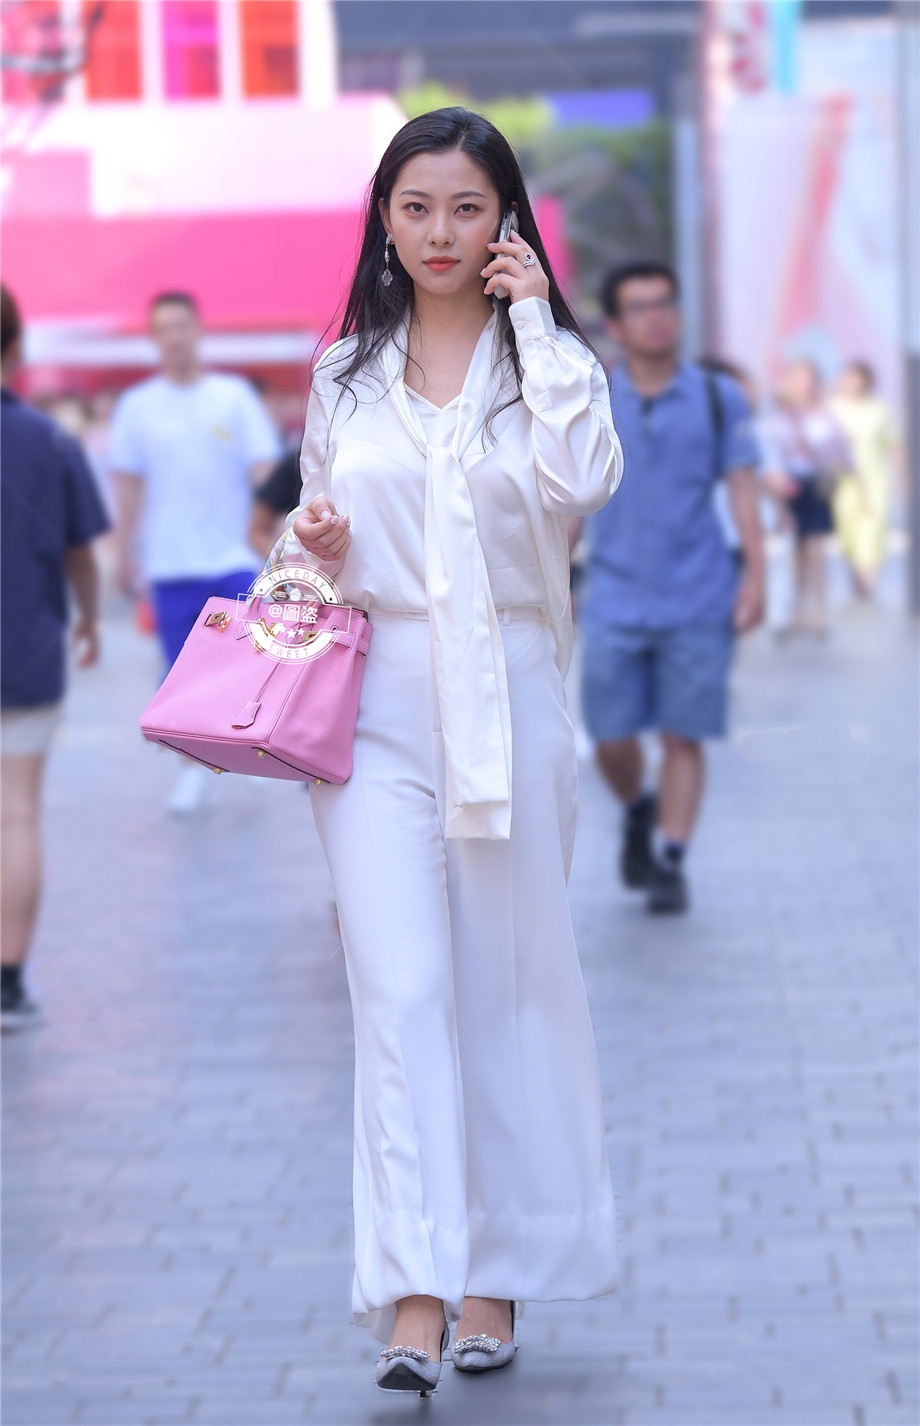 上海街头职业女性长发飘飘走路带风写真摄影